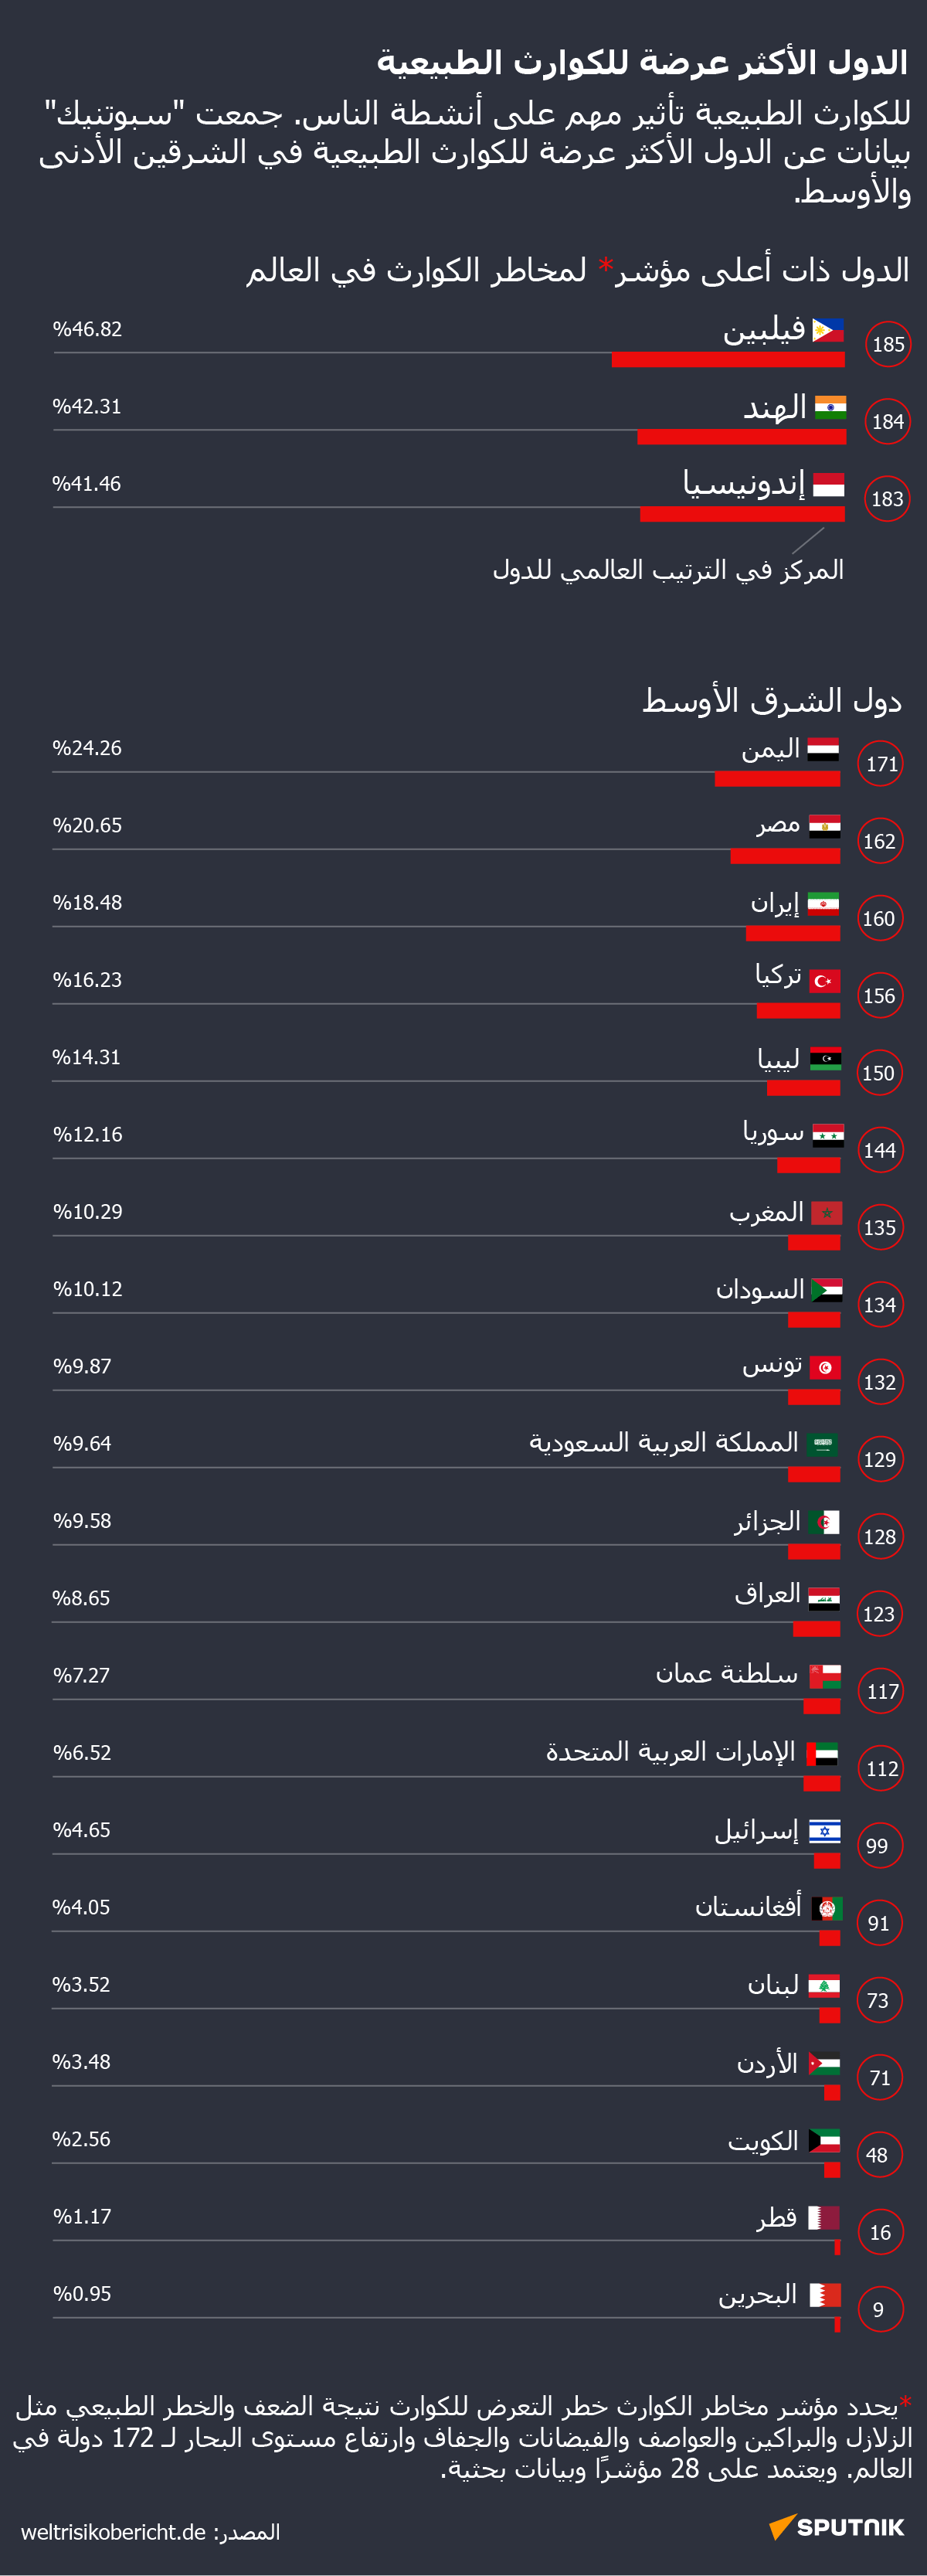 الدول الأكثر عرضة للكوارث الطبيعية - سبوتنيك عربي